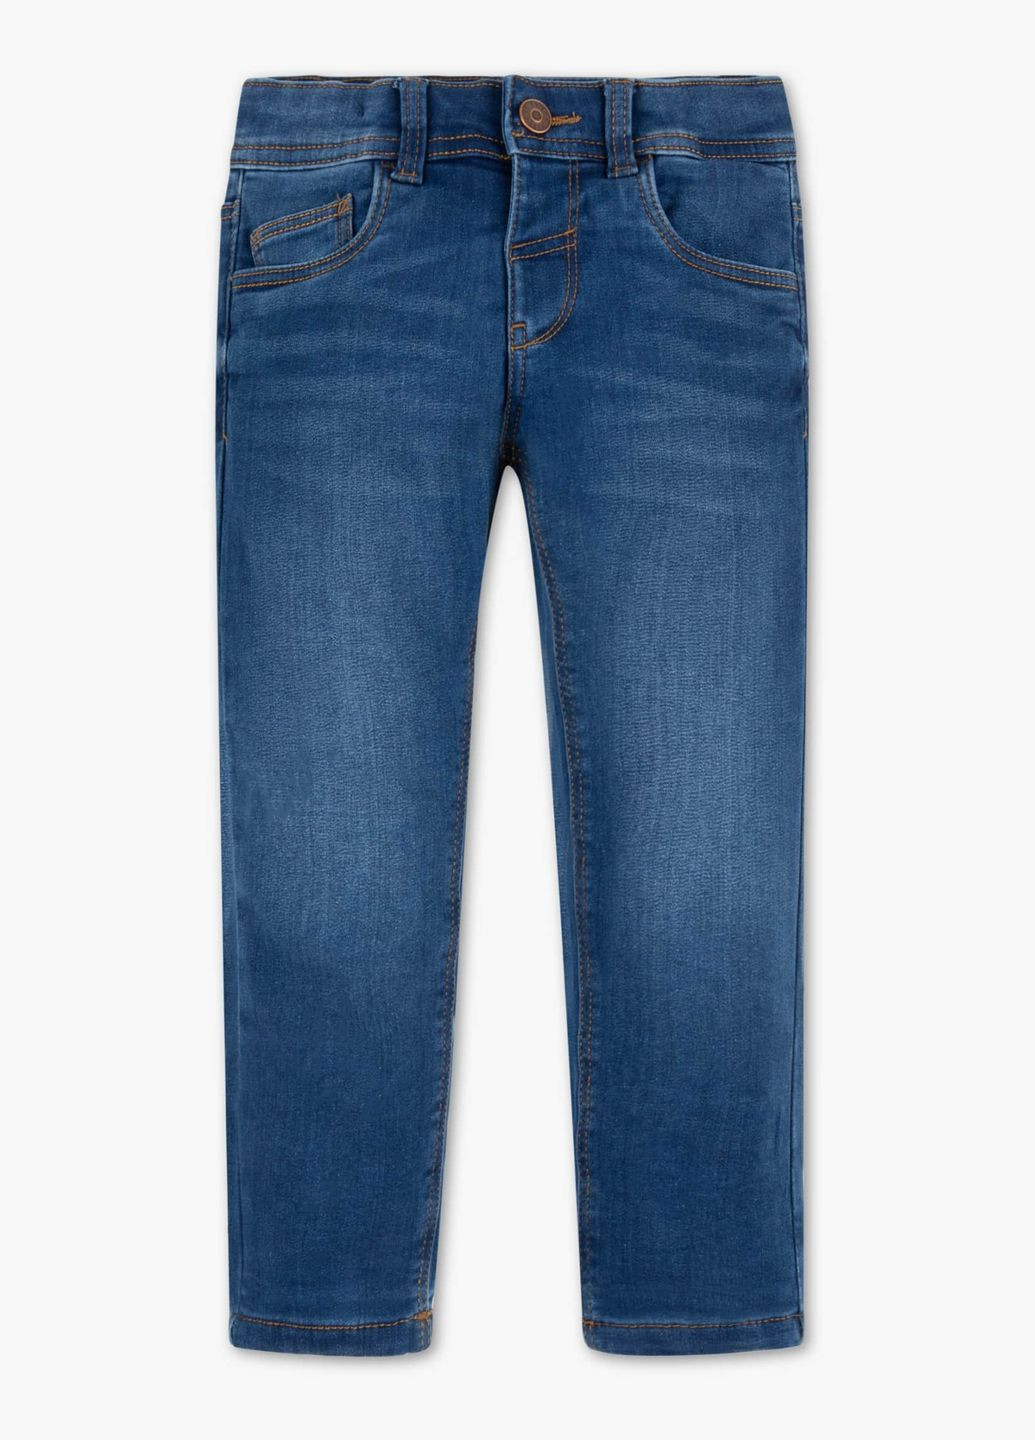 Синие демисезонные джинсы для мальчика 104 размер синие 2021420 C&A